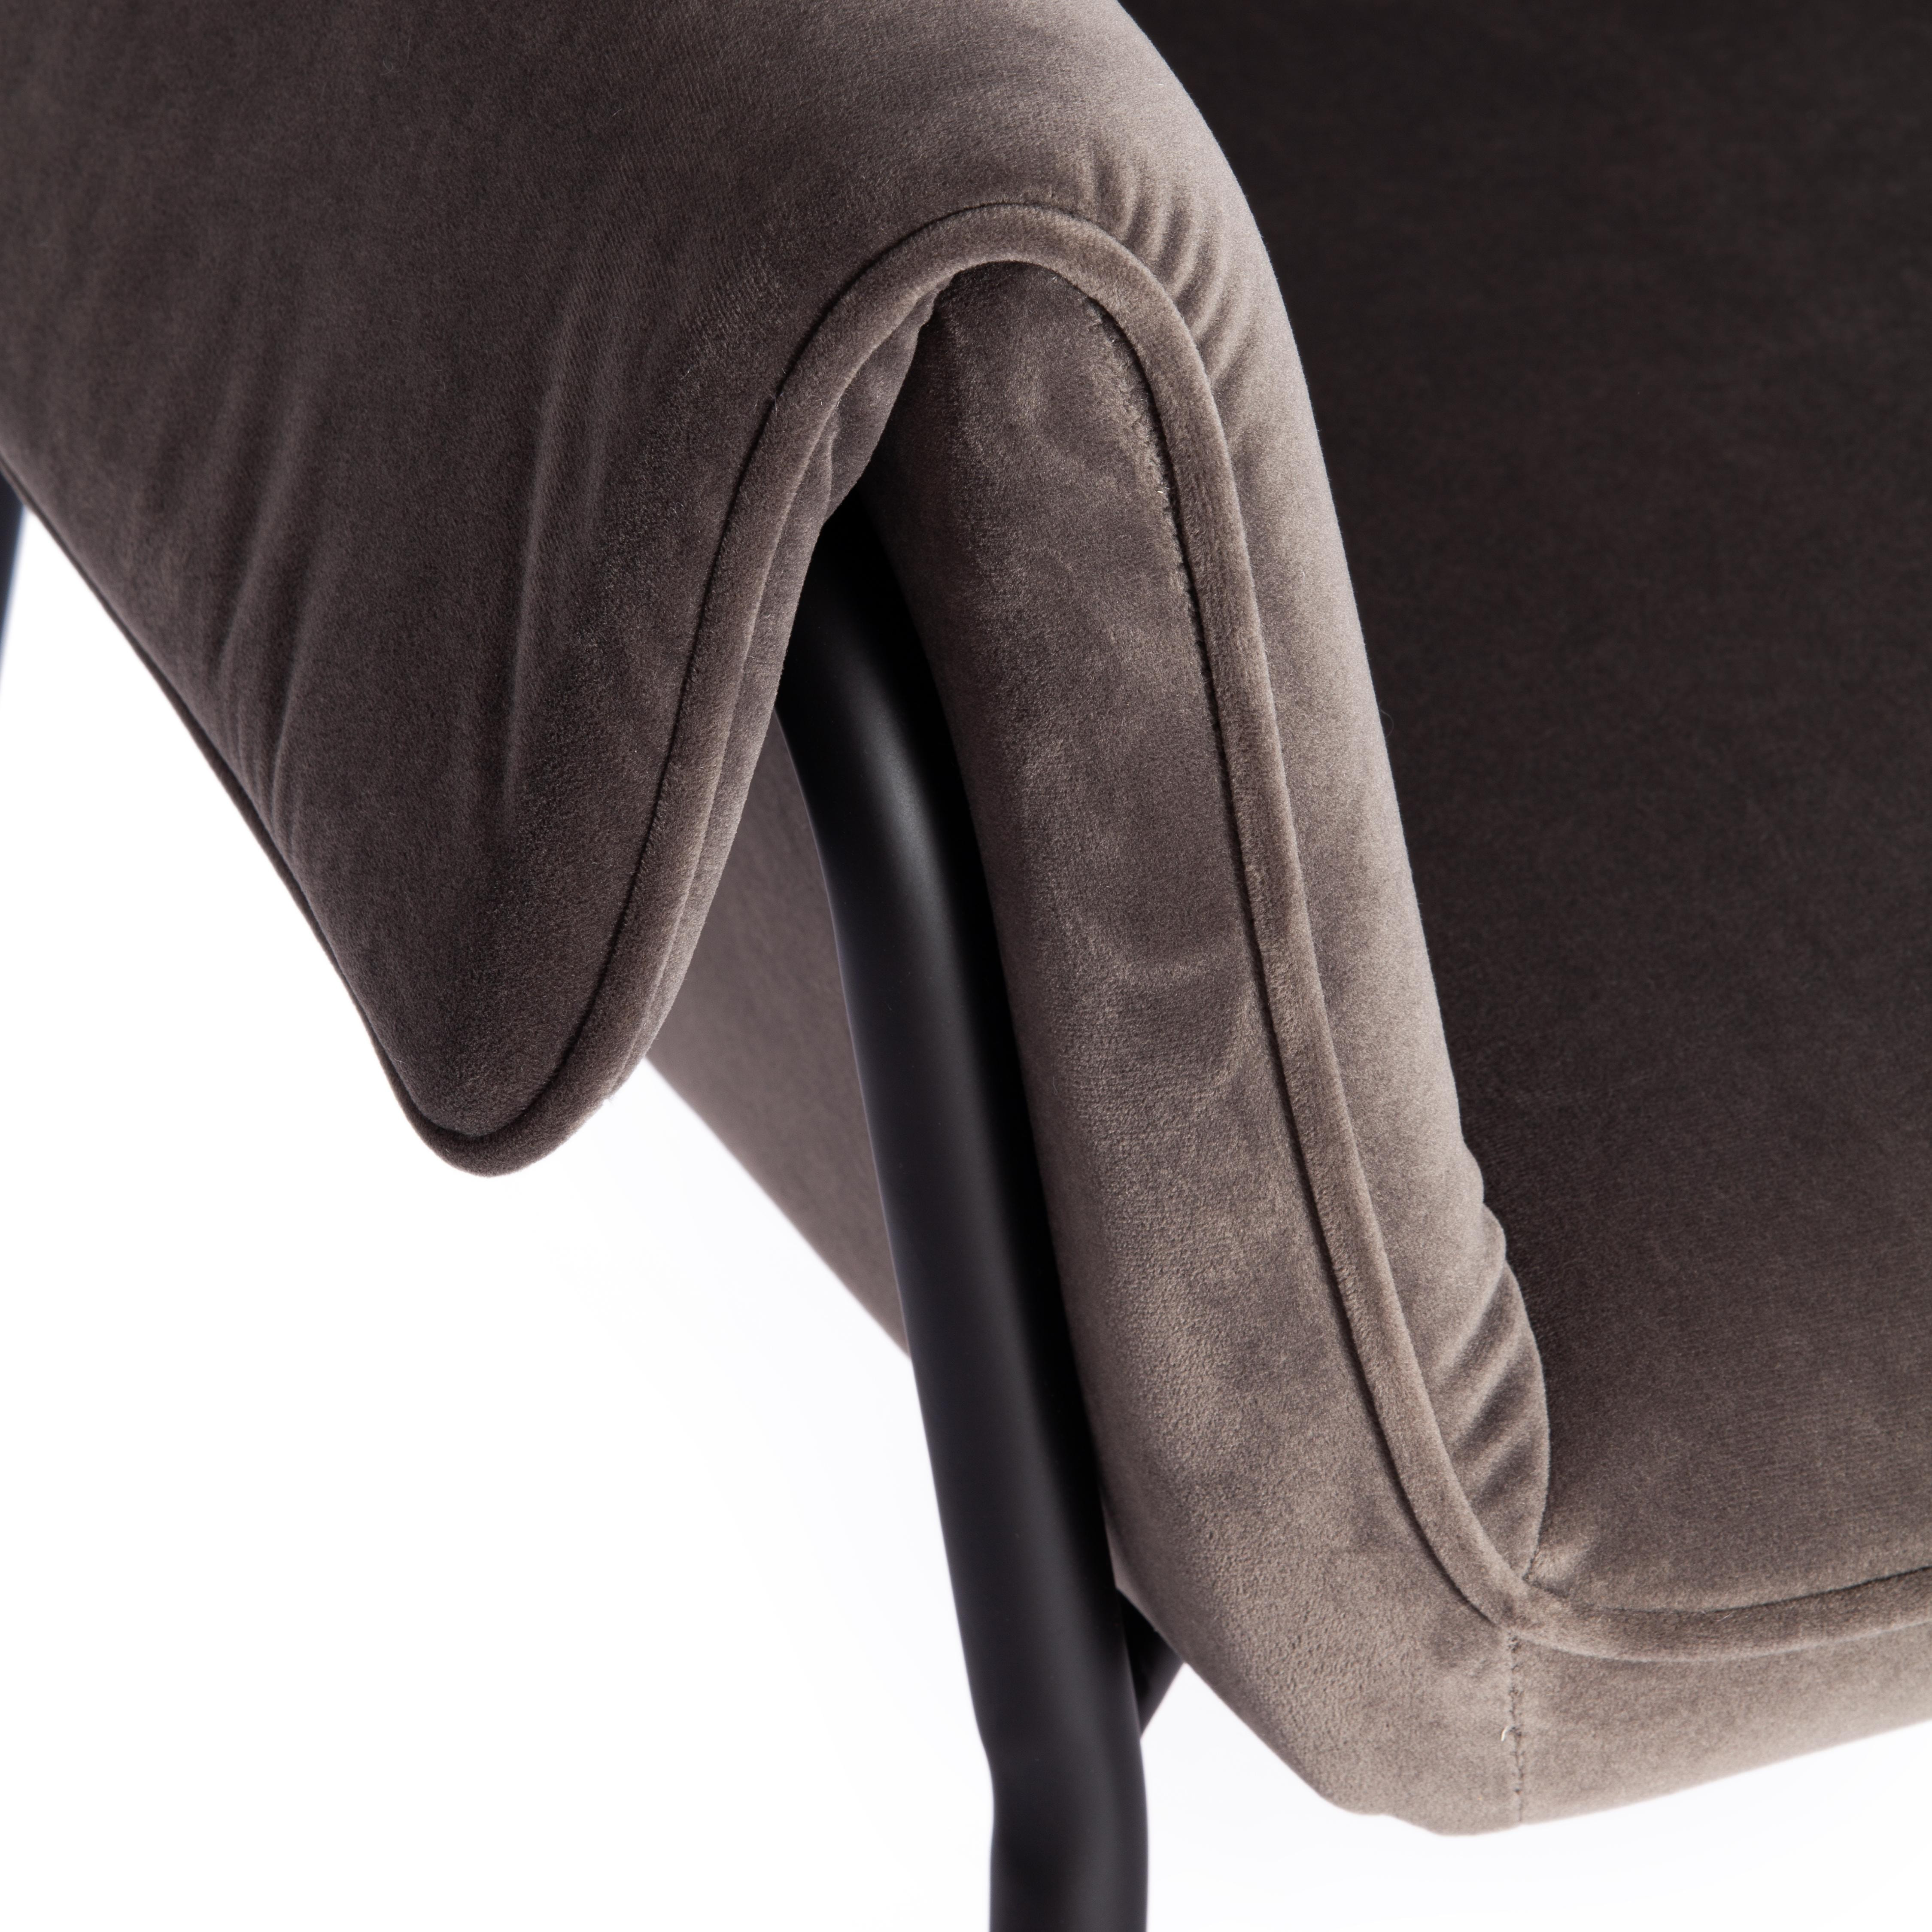 Кресло BESS (mod. 0179471) металл/вельвет, 70х71х75 см, серо-коричневый S108 (84 Brown)/черный